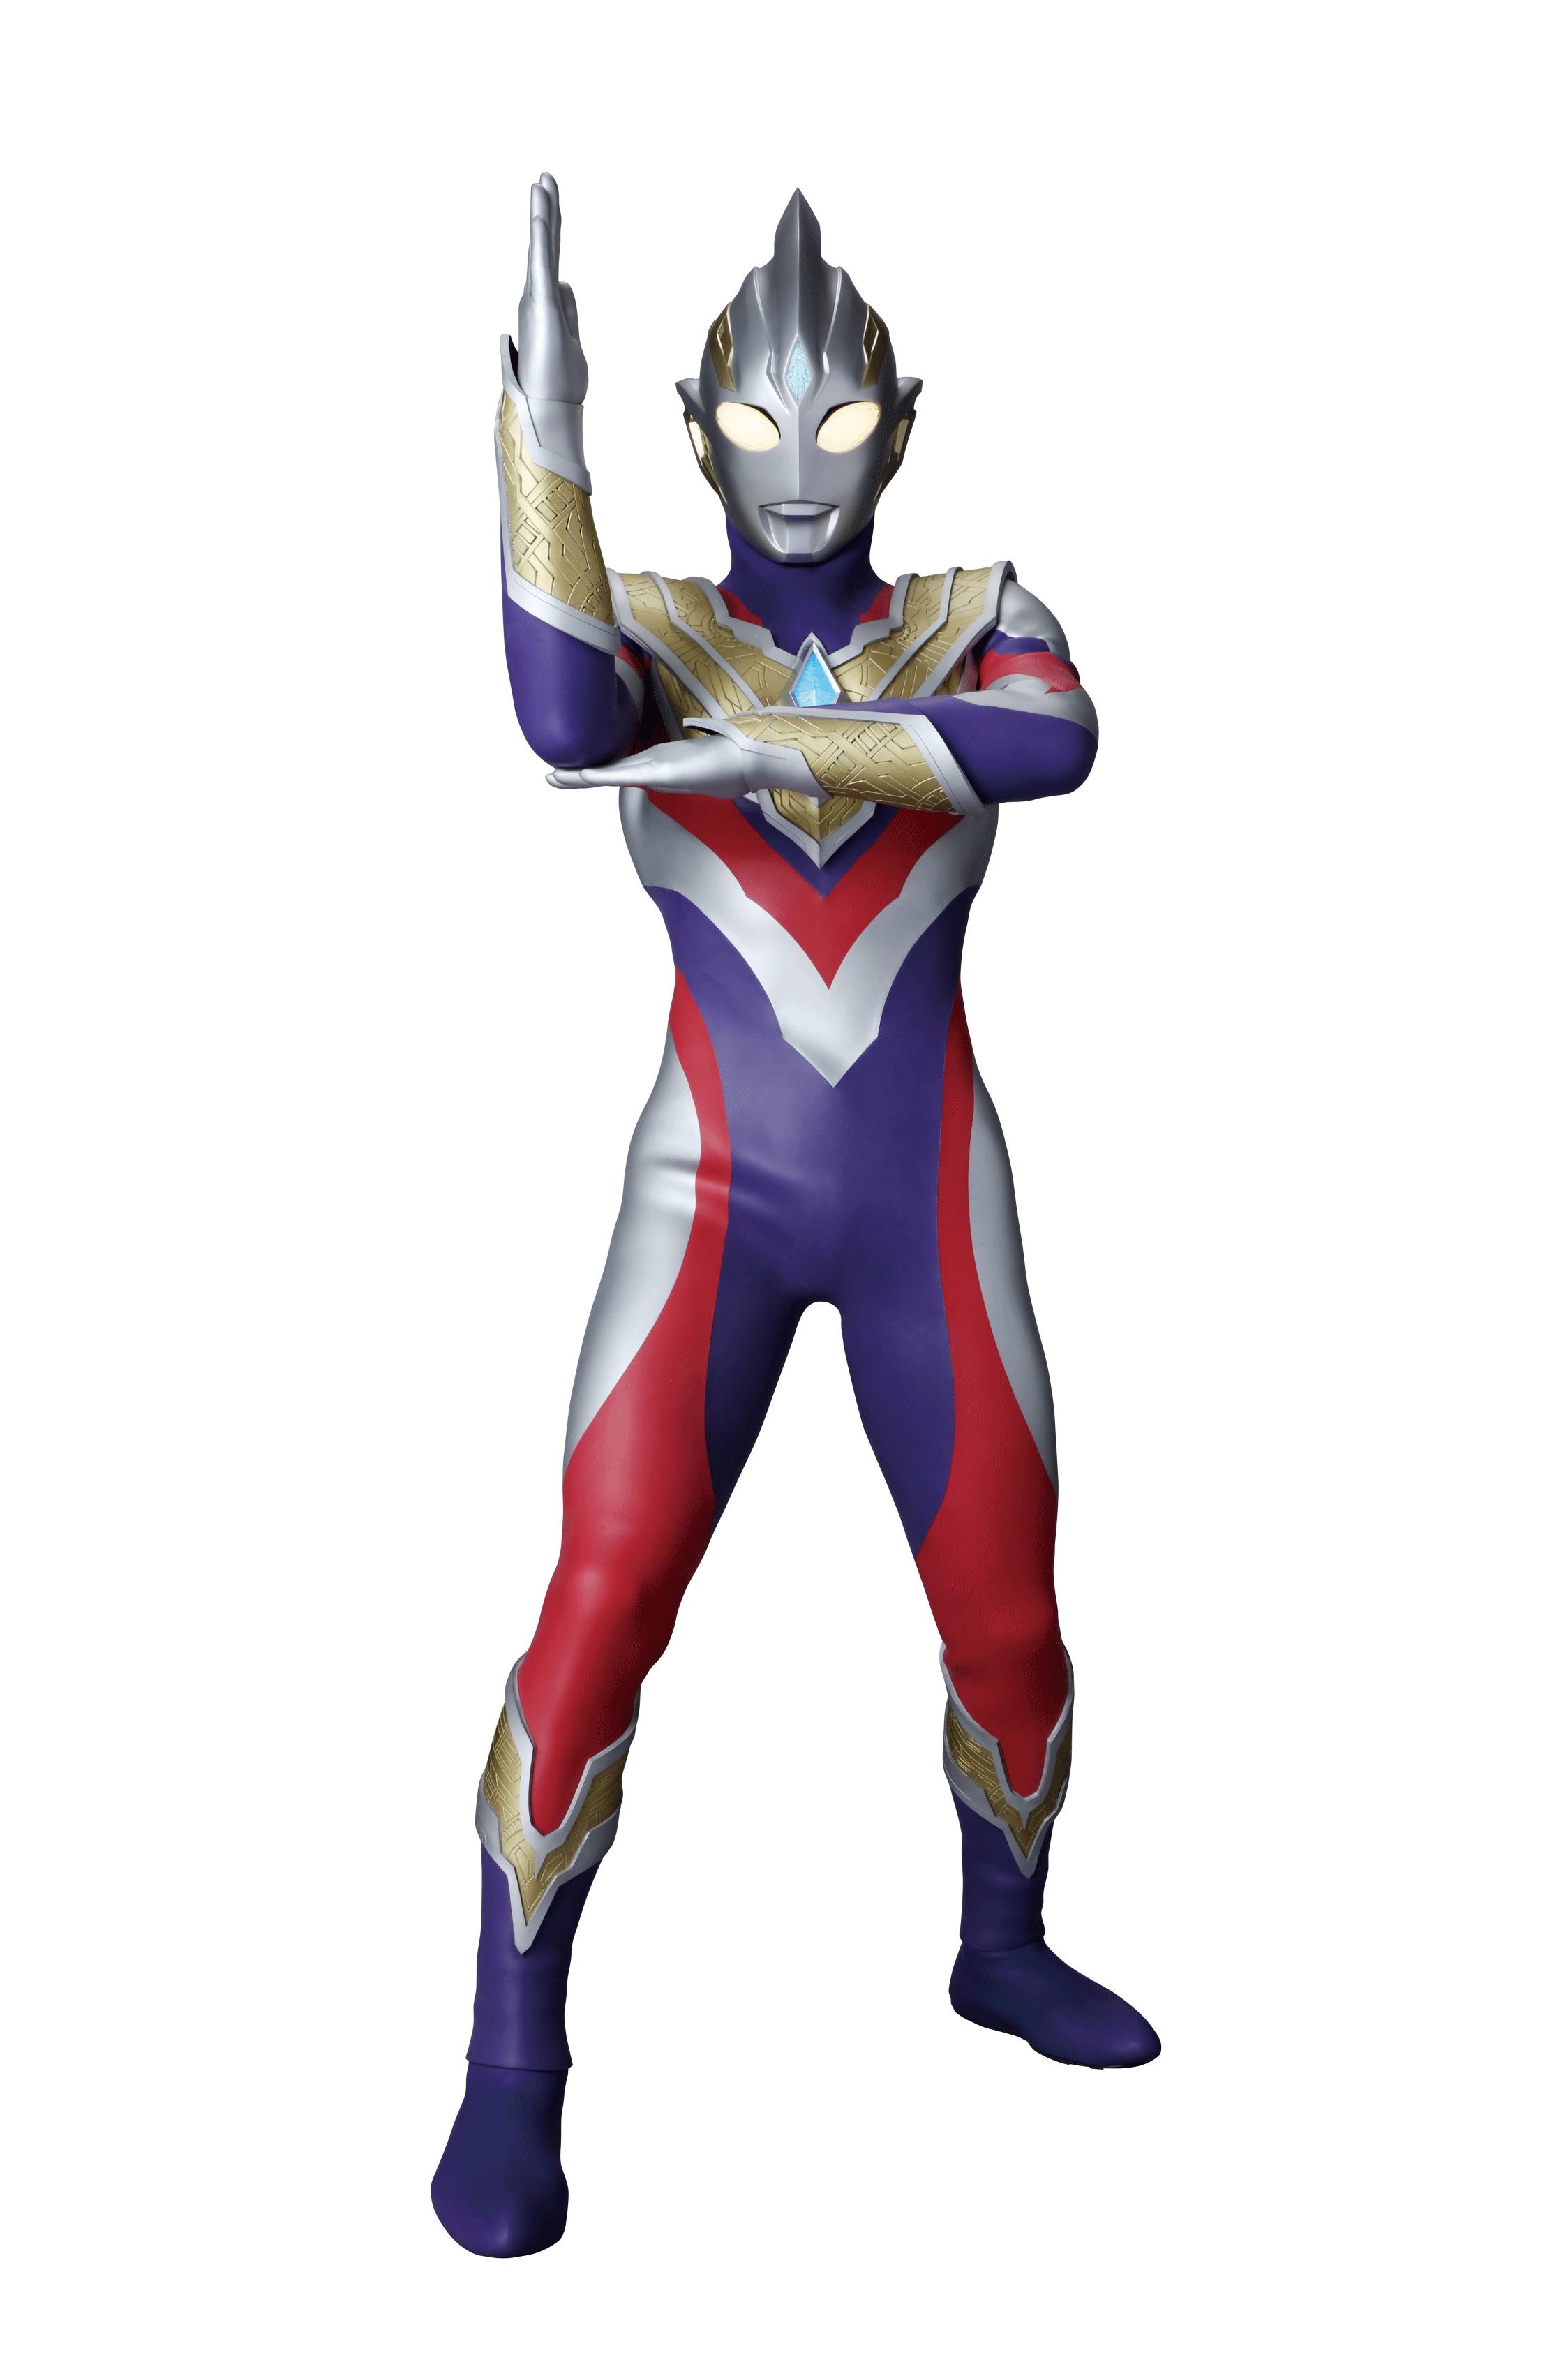 Trigger ultraman Ultraman Trigger